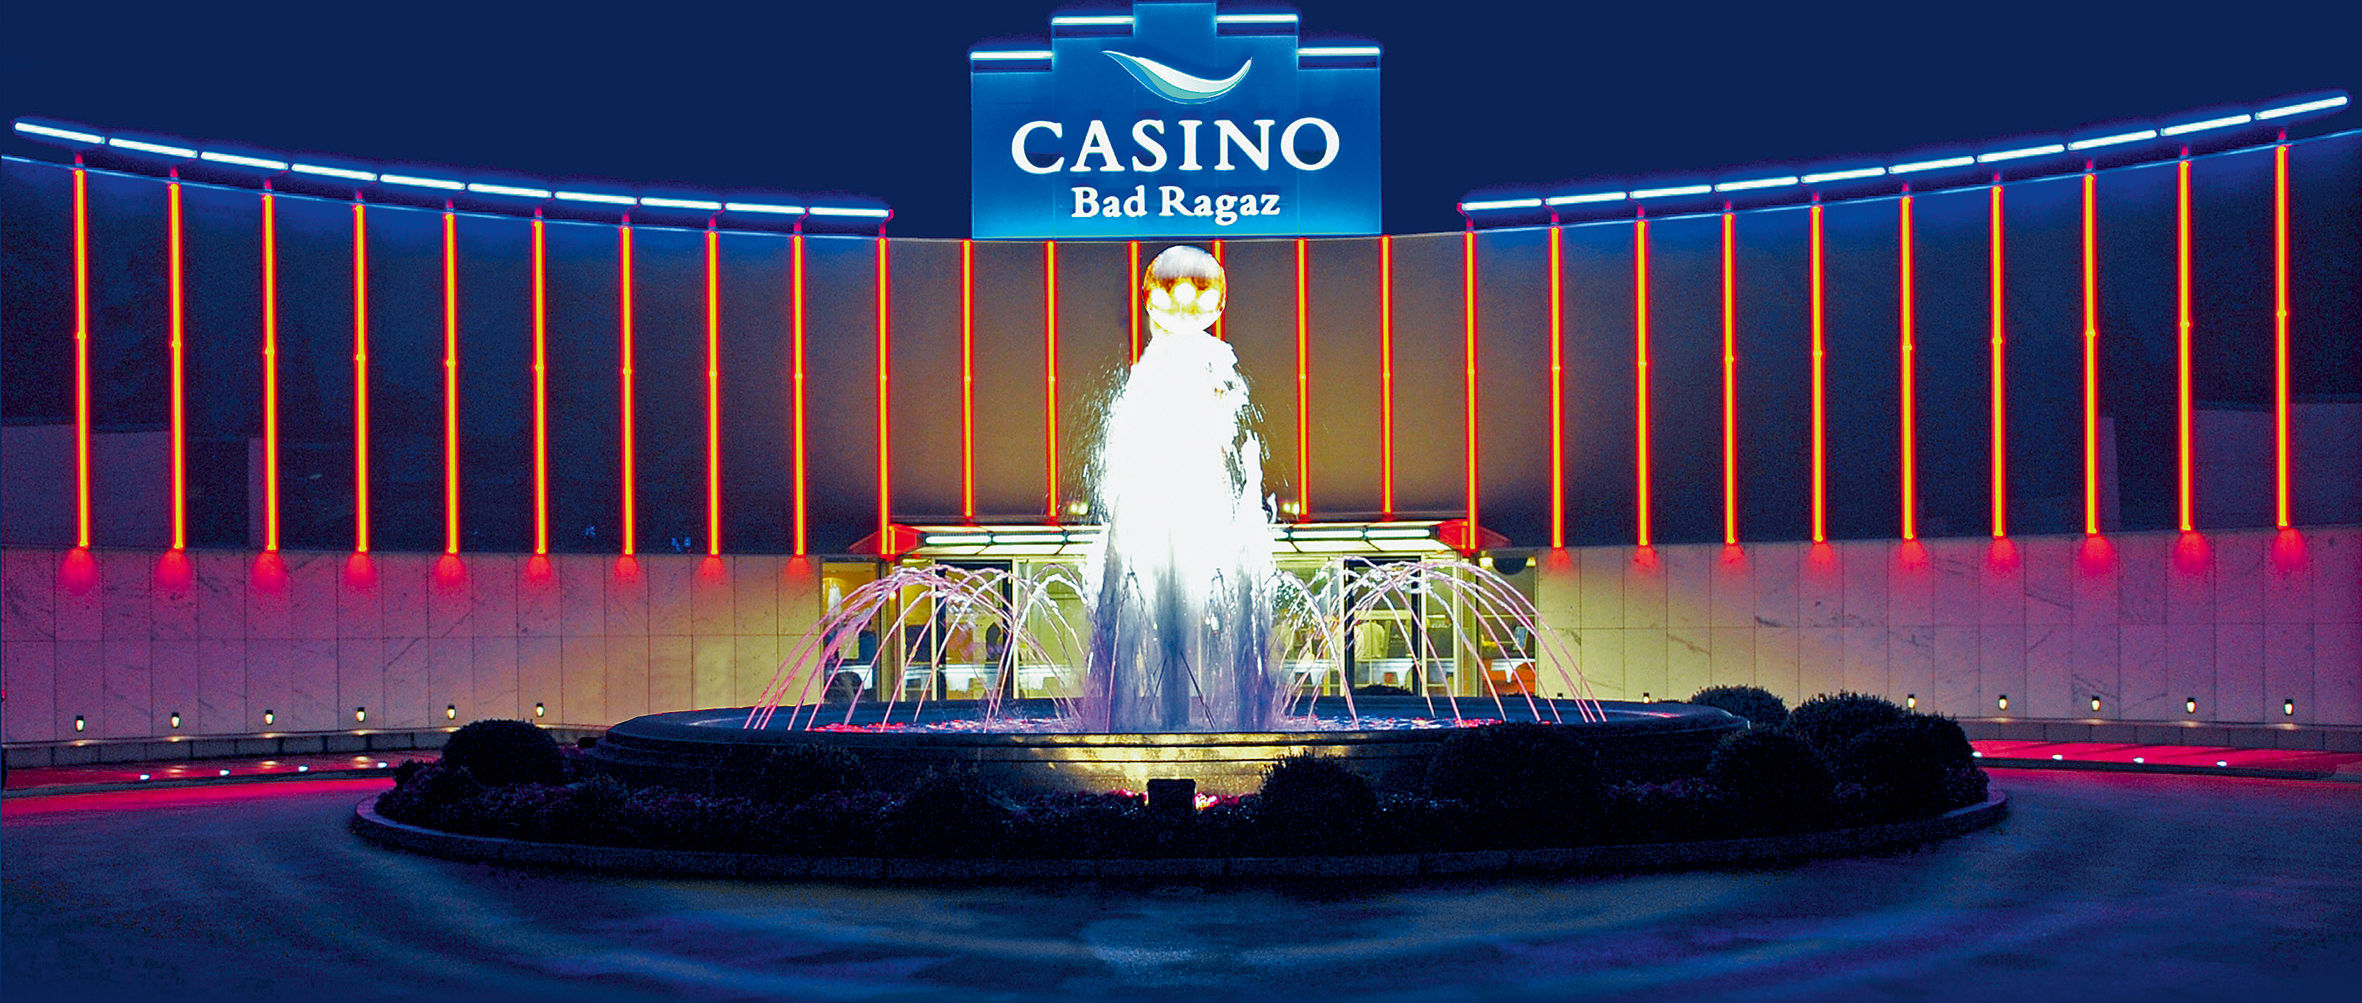 Aussenansicht des Casino Bad Ragaz